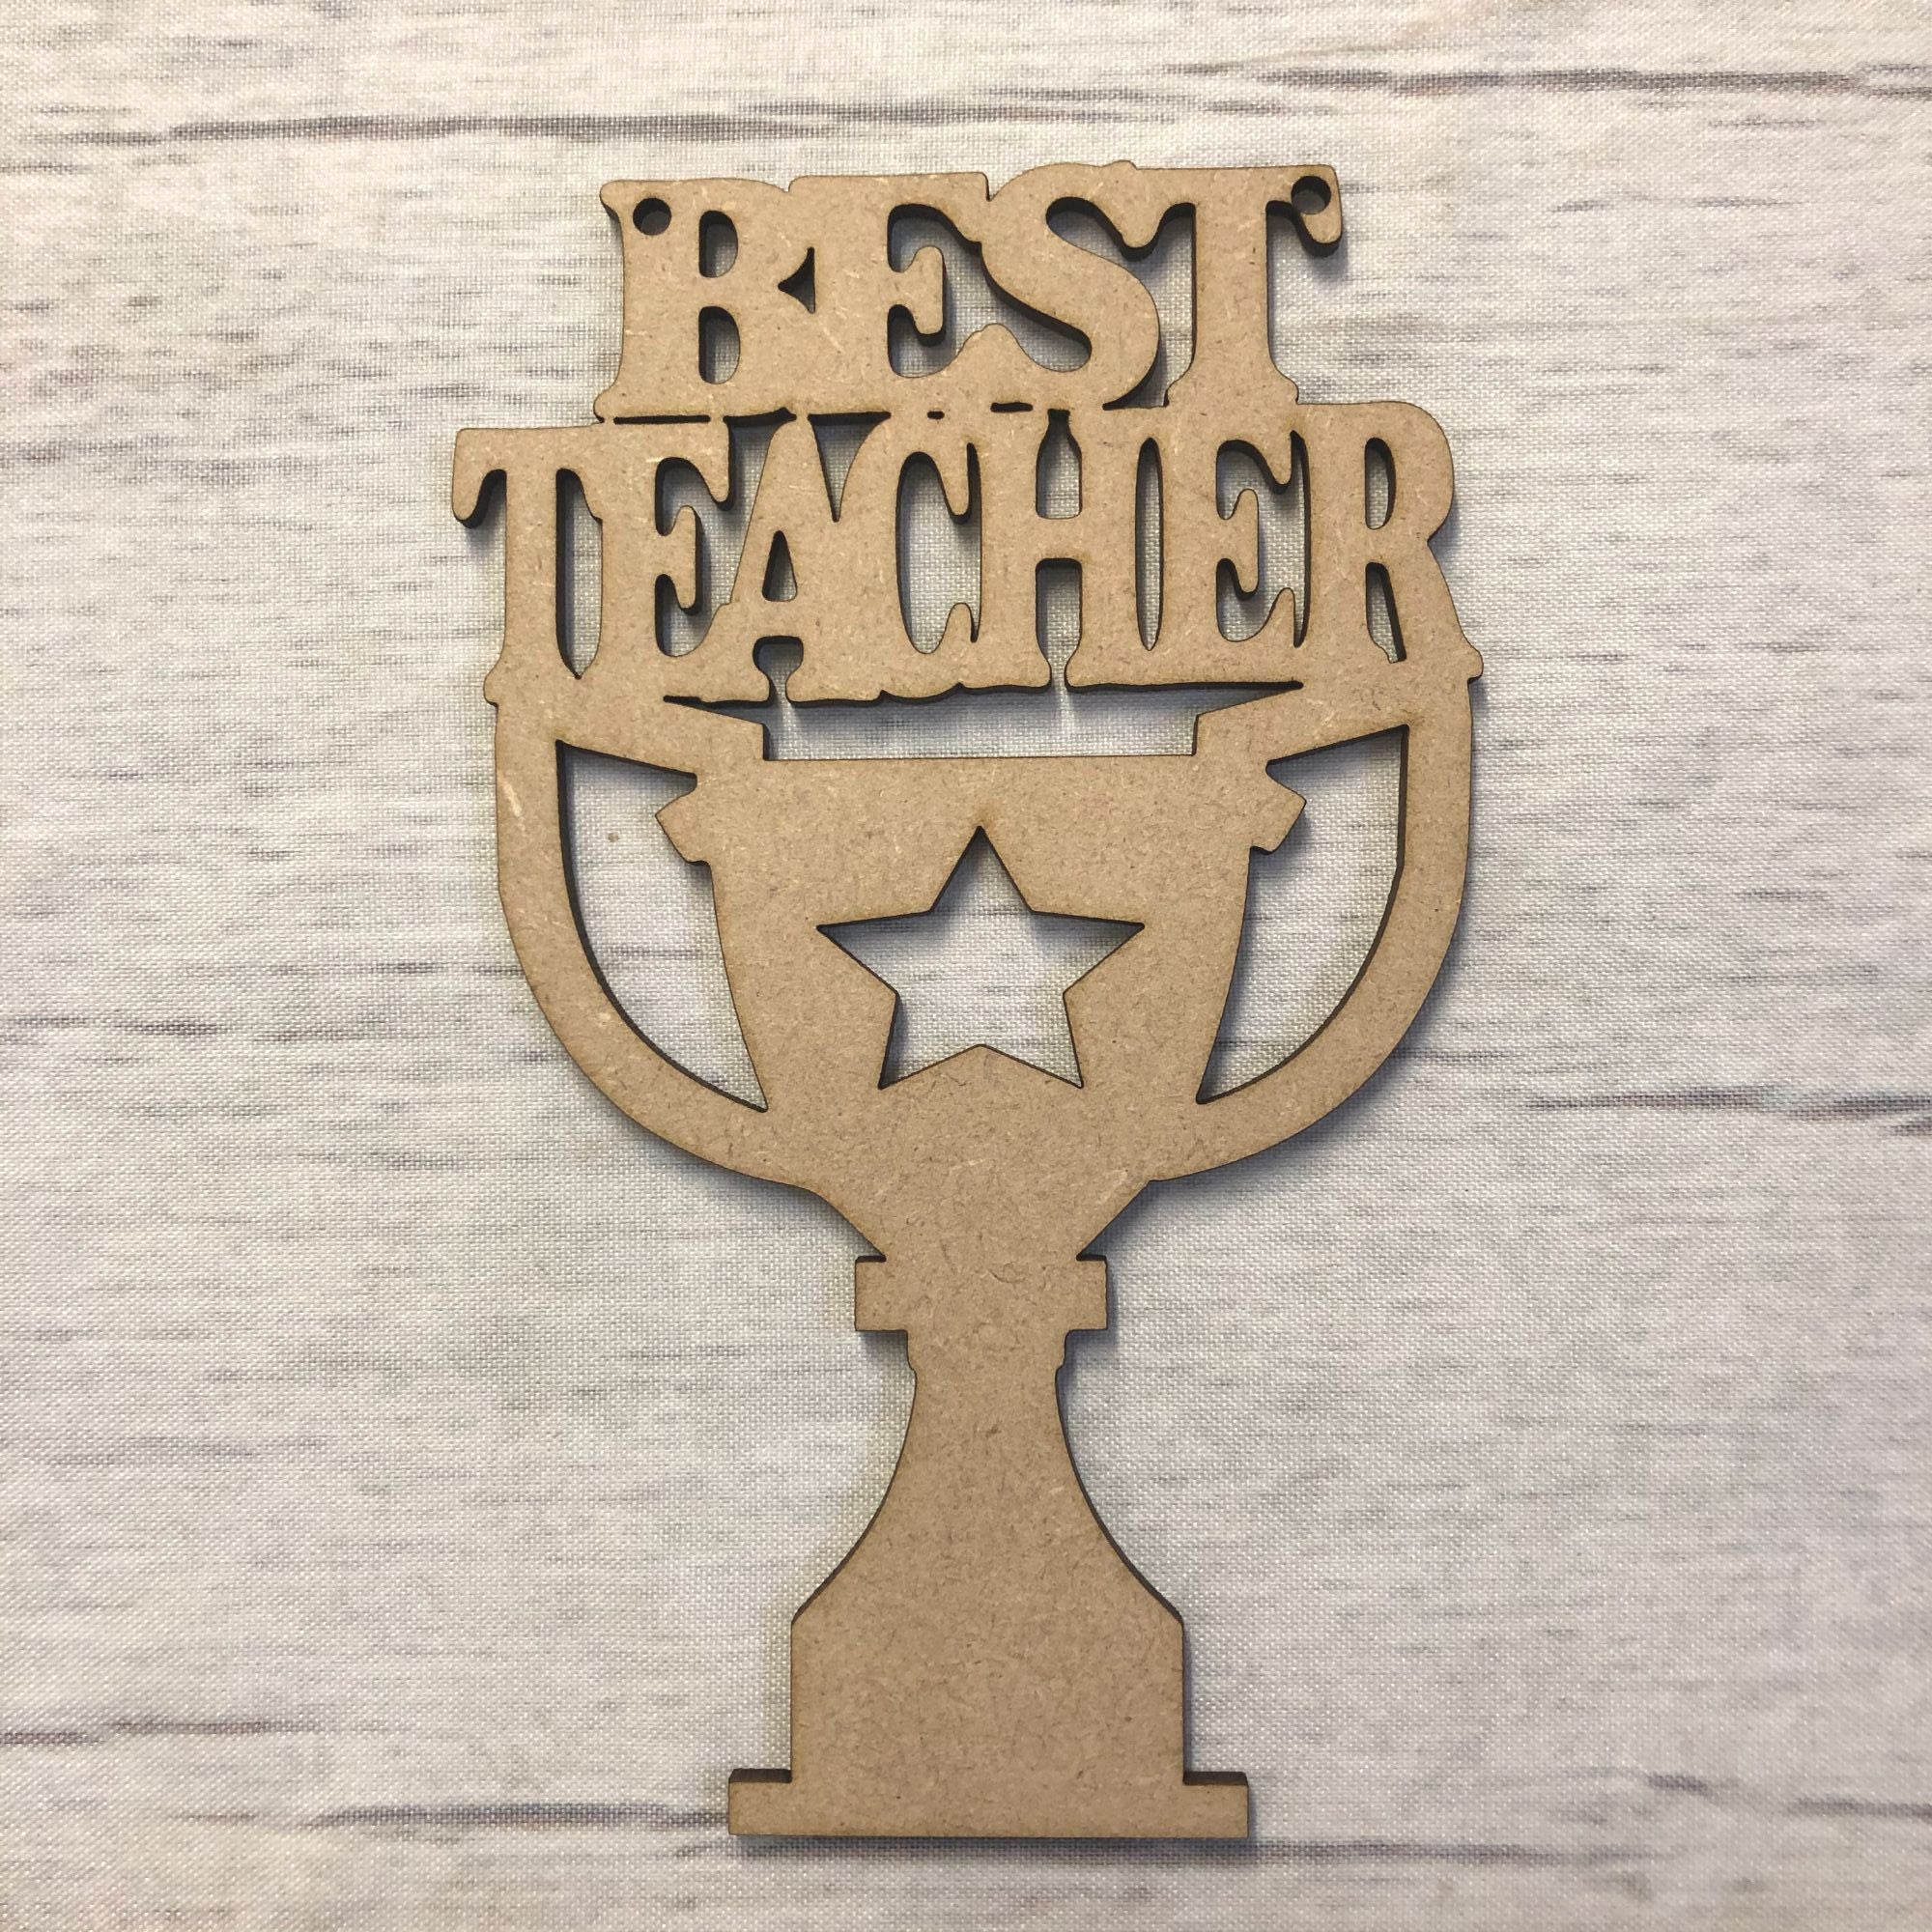 Best Teacher Trophy